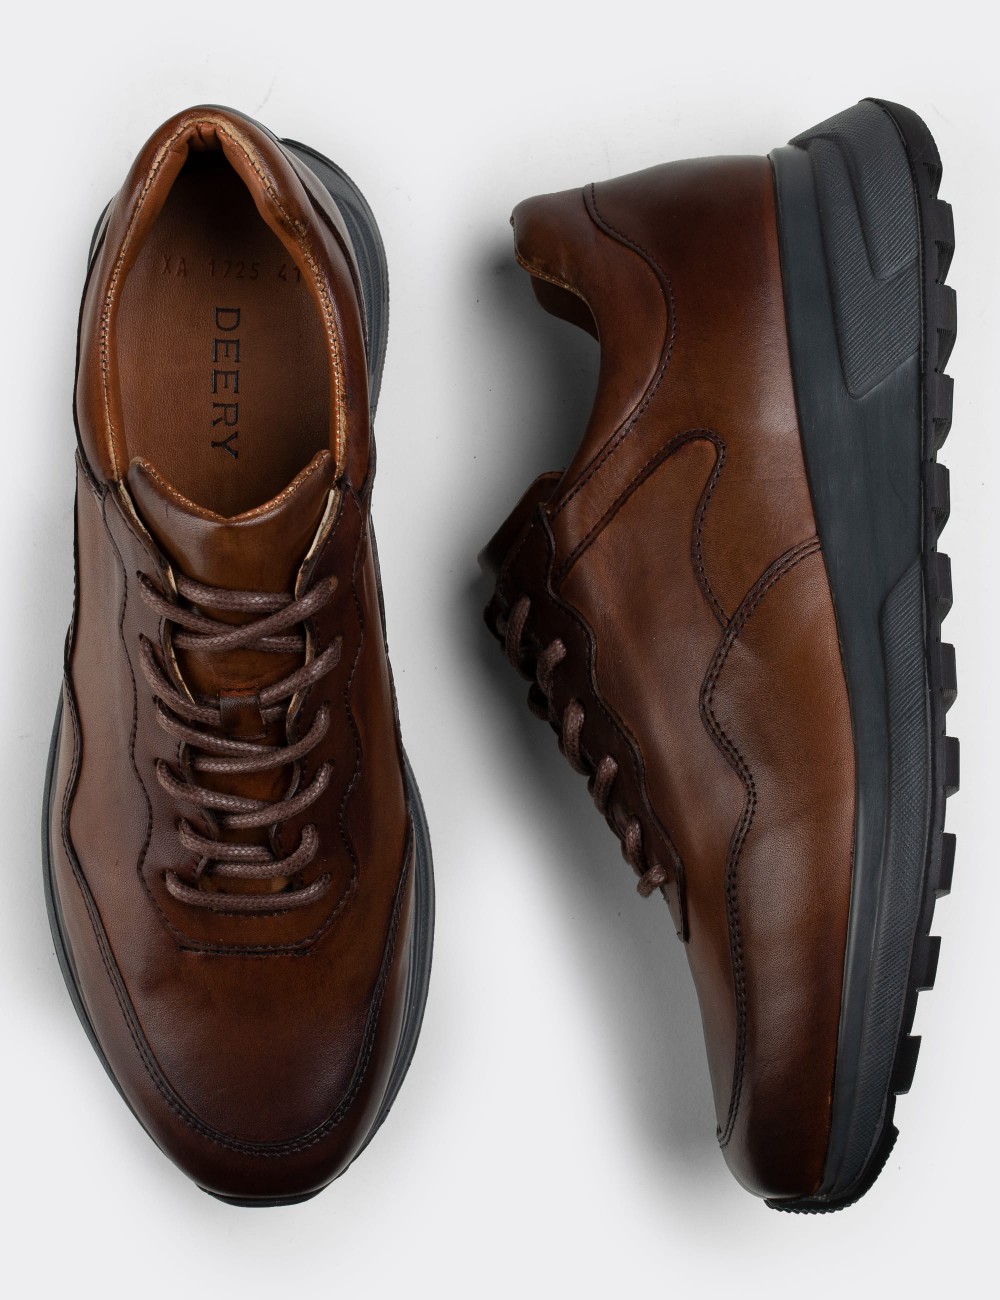 Tan  Leather Sneakers - 01725MTBAP01